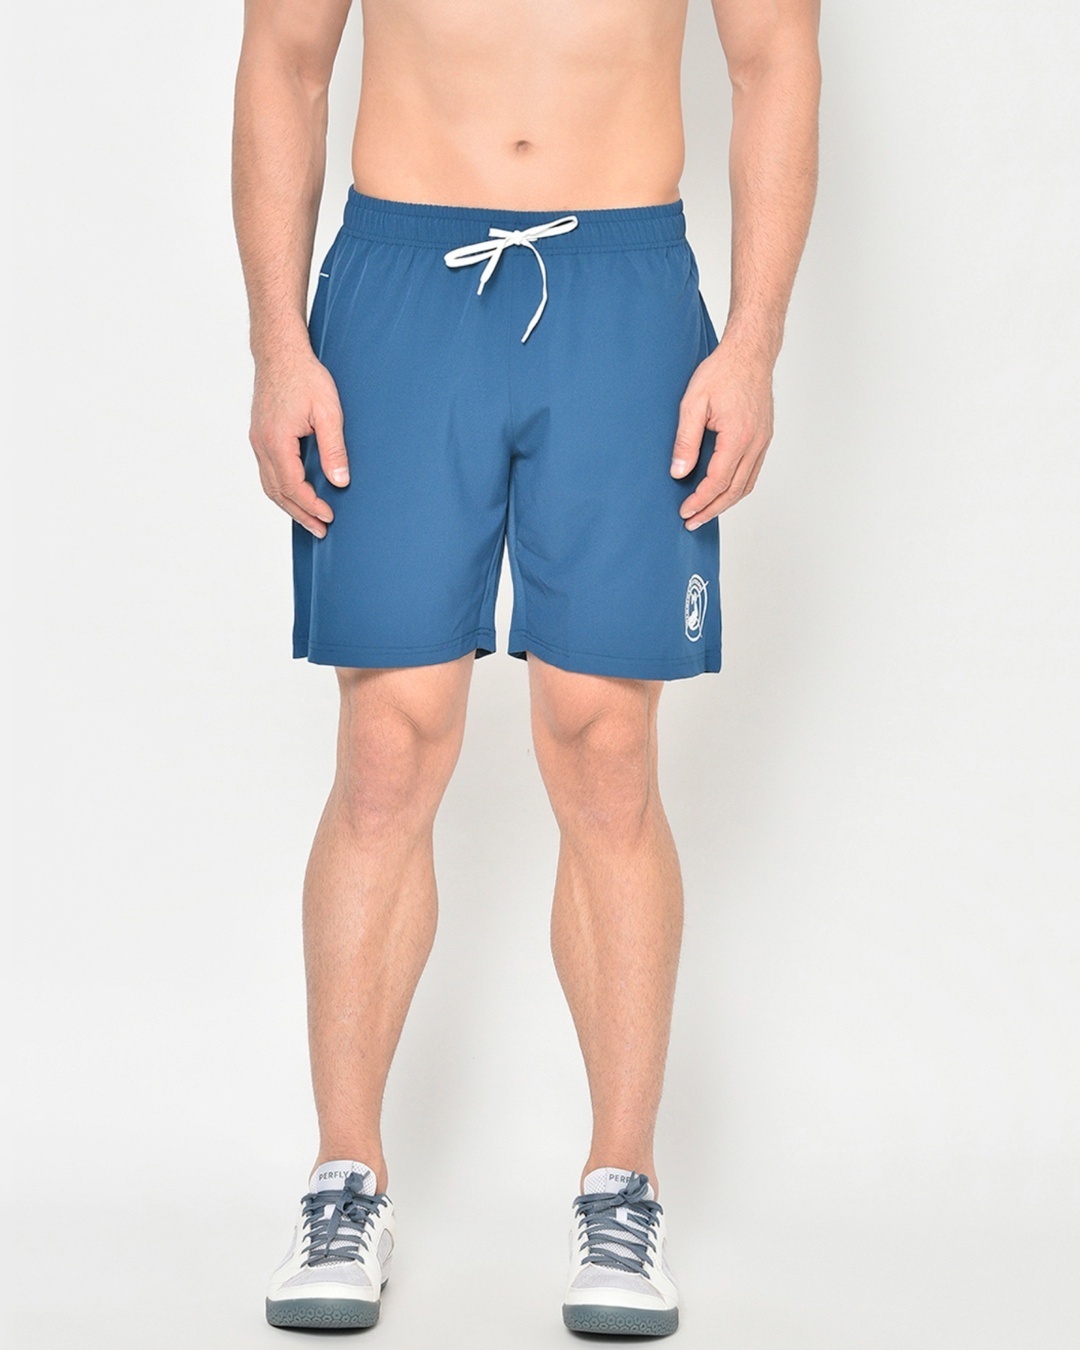 Shop Men's Blue Sports Shorts